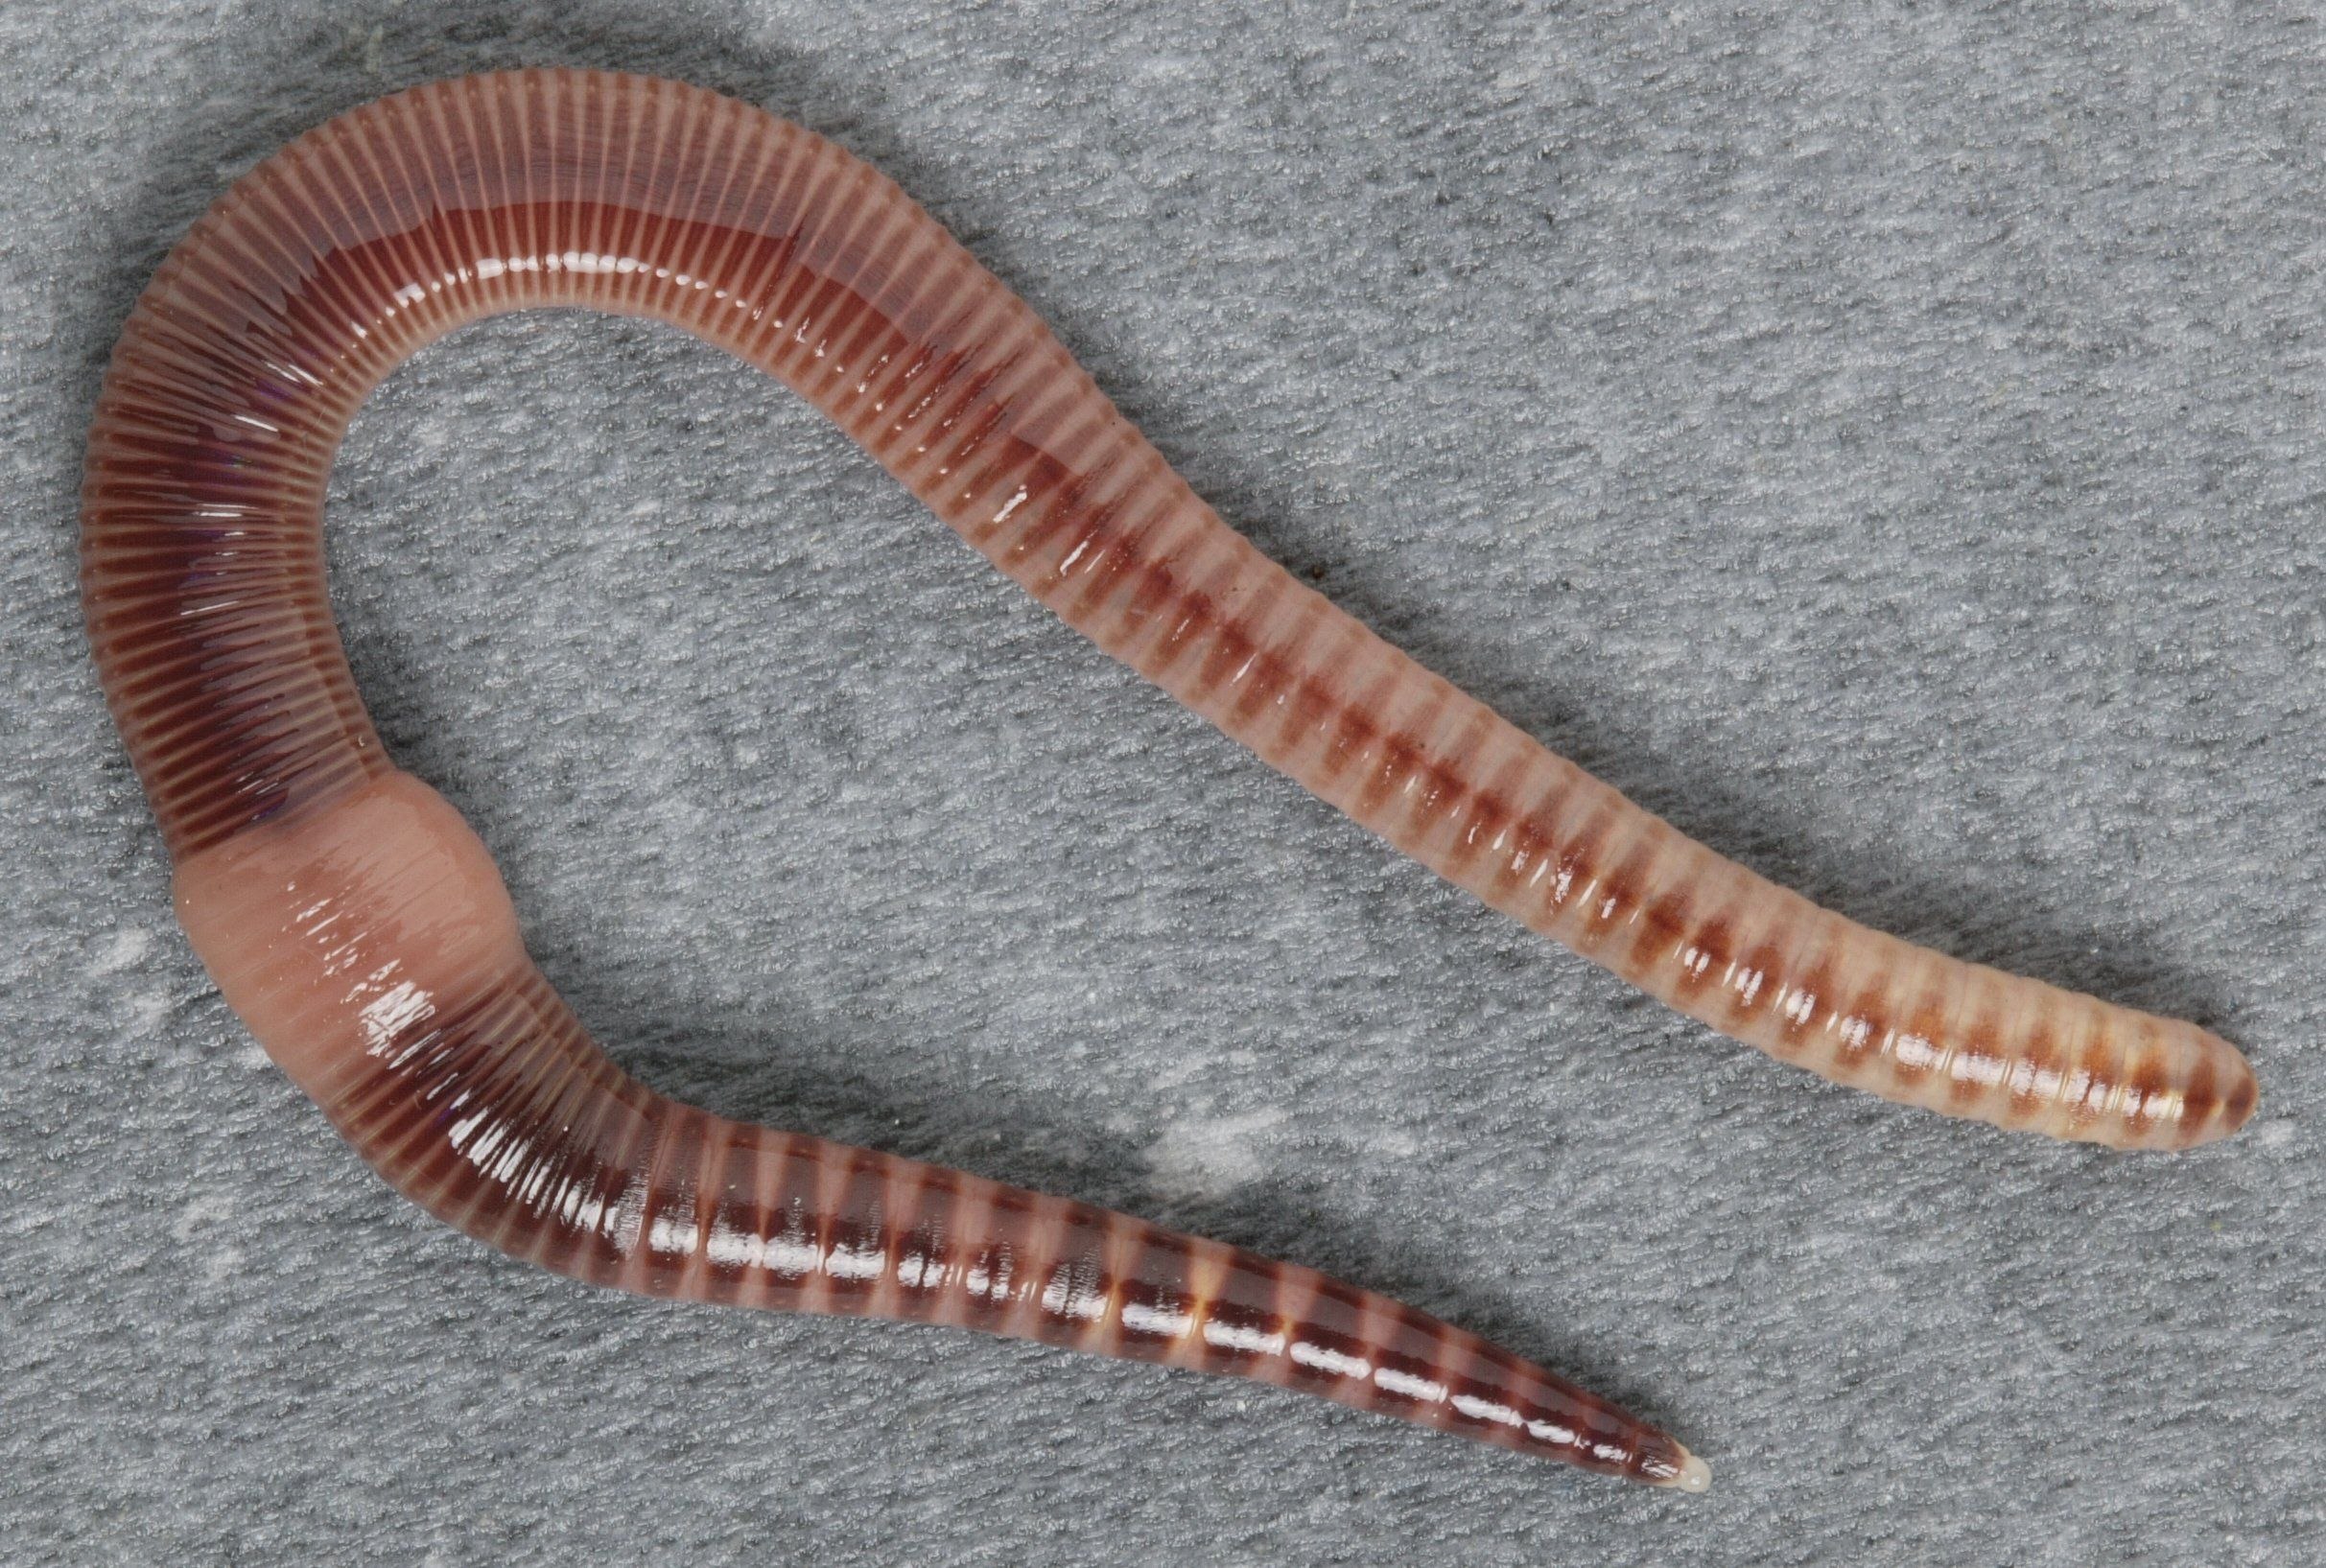 Червь дождевой обыкновенный. Малошетниковфй крльчатые черви. Малощетинковые кольчатые черви. Малощетинковые черви (дождевой червь). Oligochaeta (Малощетинковые черви).